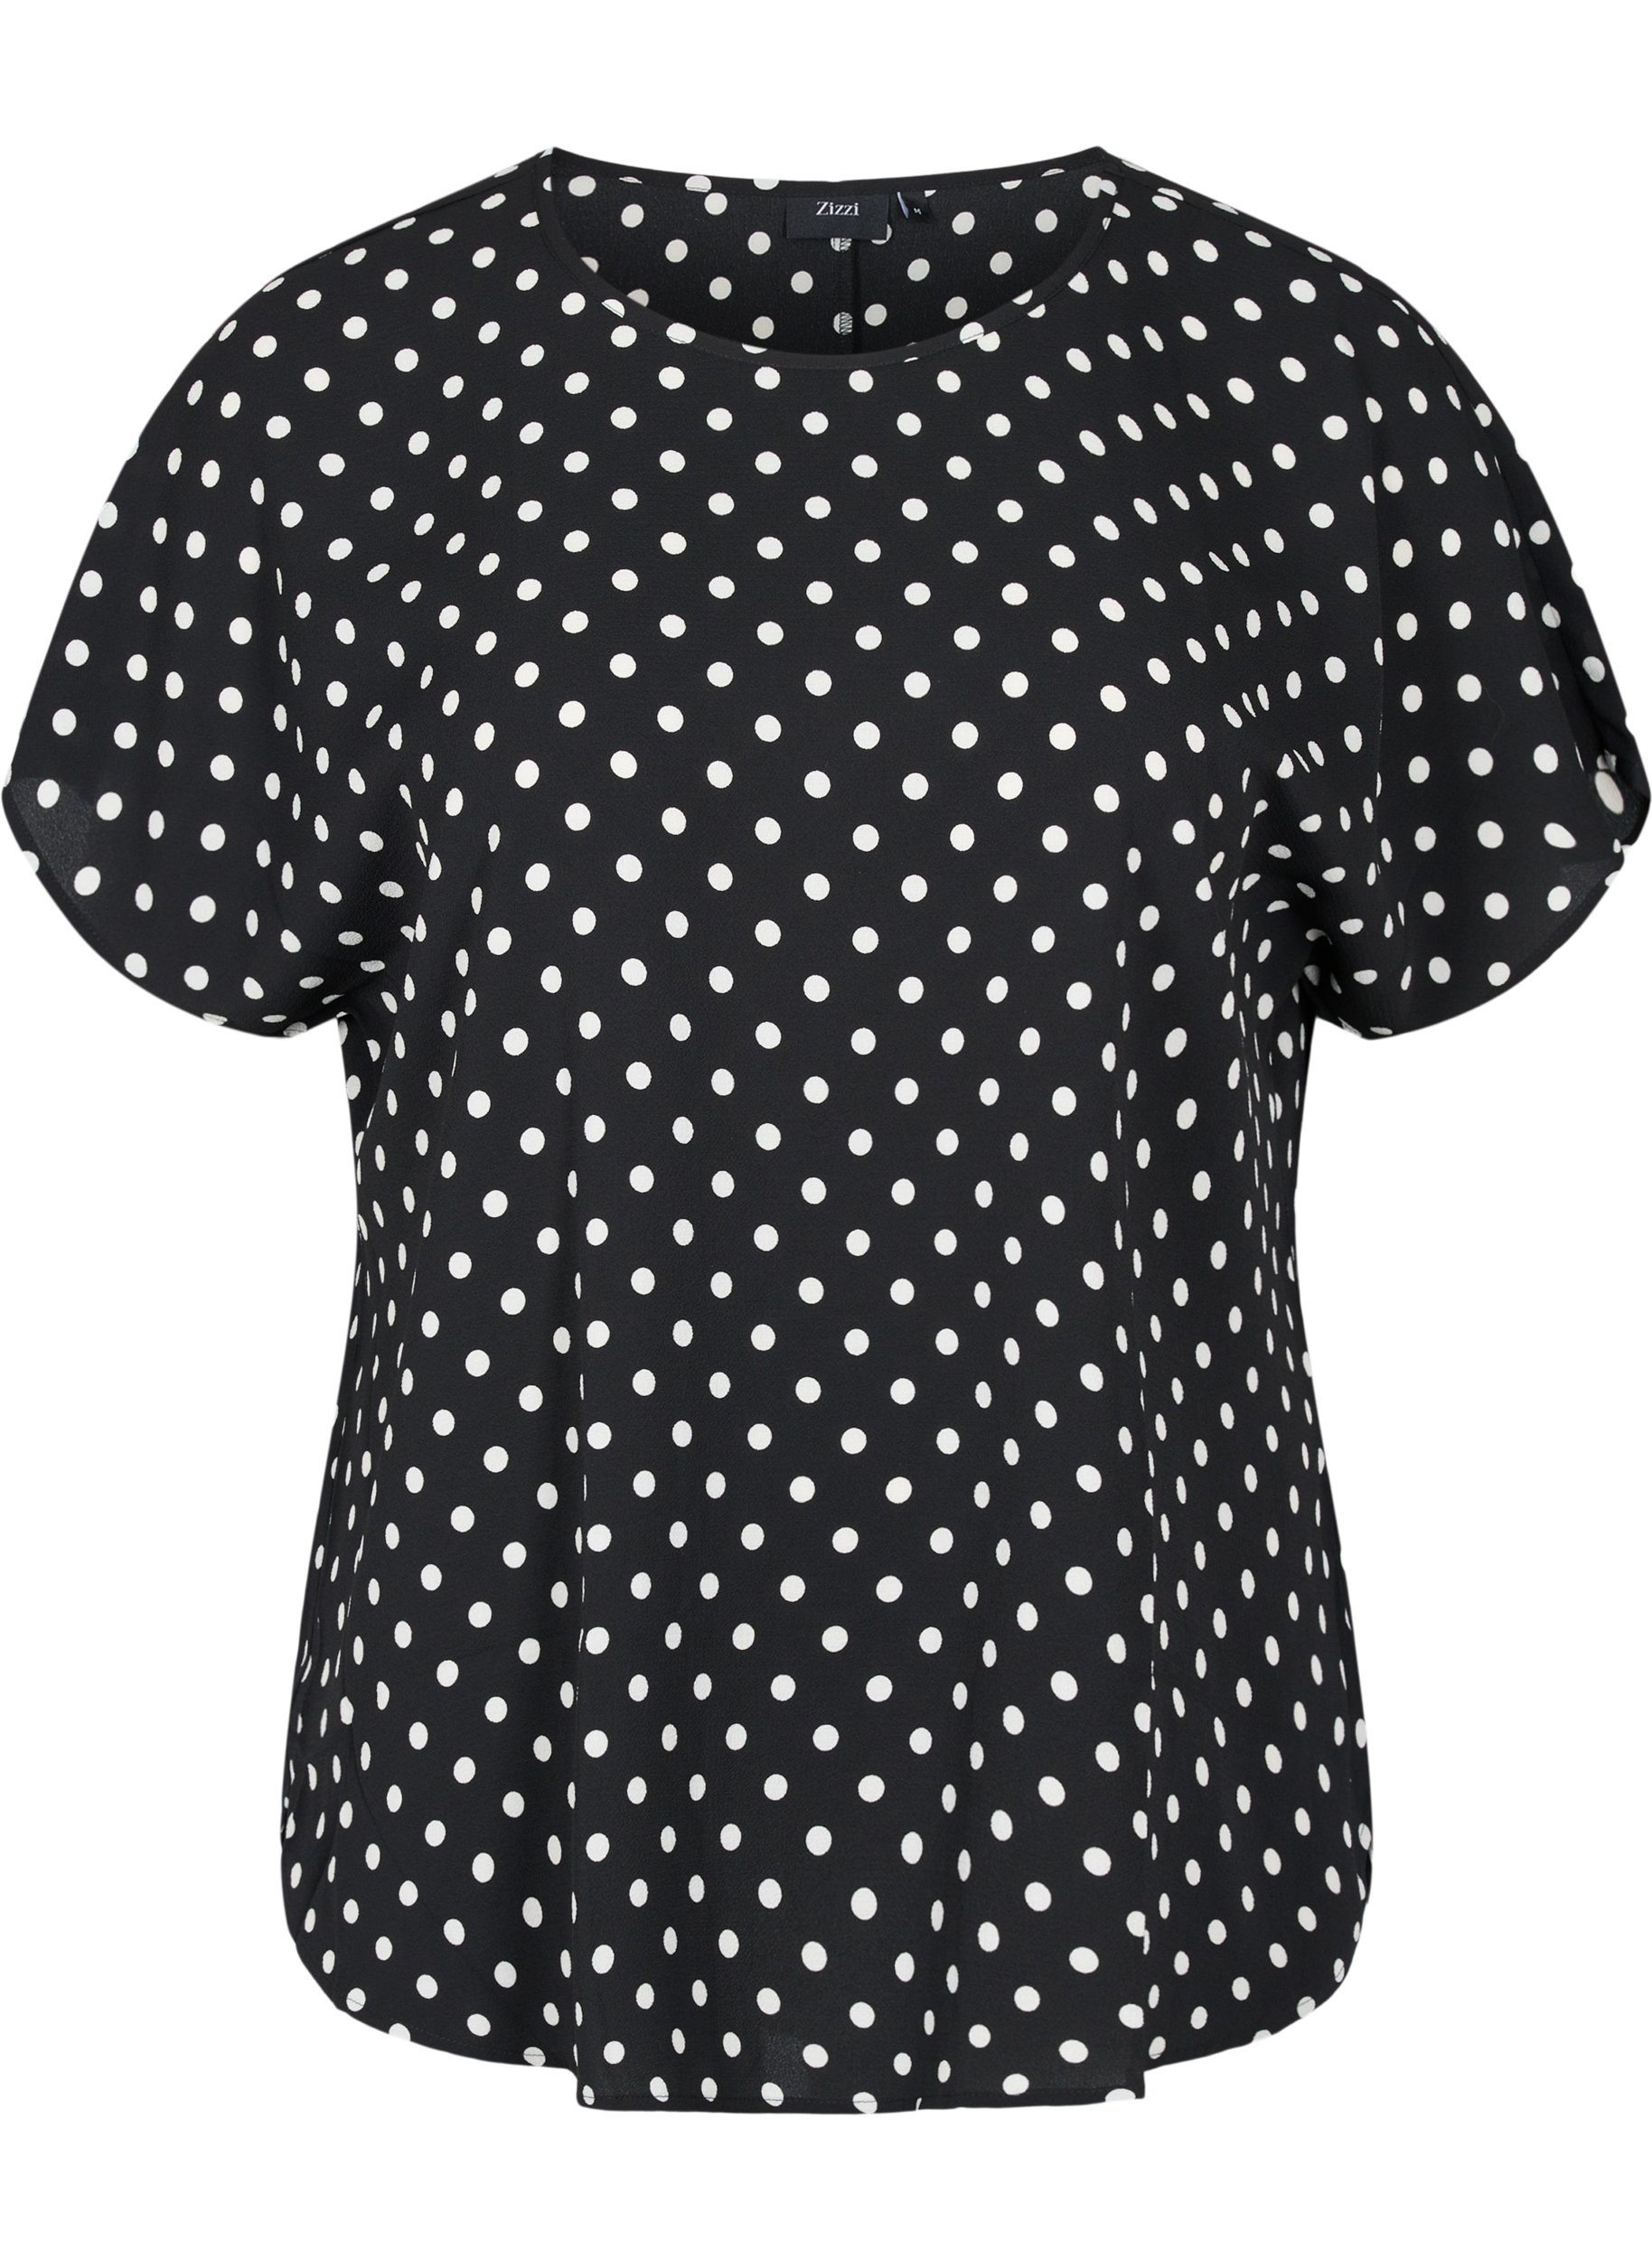 Bluse mit kurzen Ärmeln und Rundhalsausschnitt, Black w White Dot